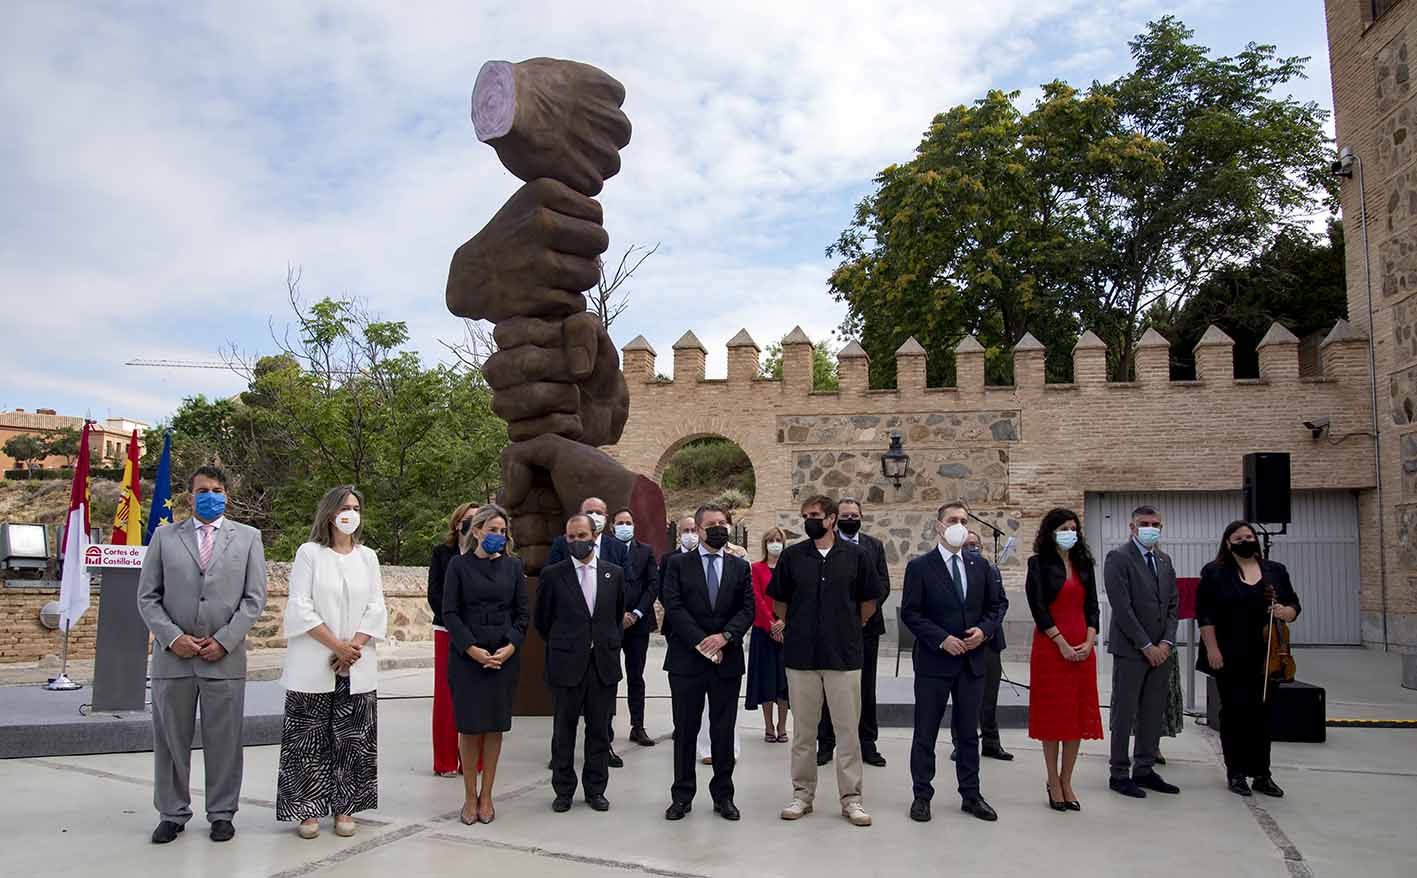 La escultura de homenaje a las víctimas de la pandemia y a los trabajadores esenciales se ha inaugurado hoy en las Cortes de Castilla-La Mancha.